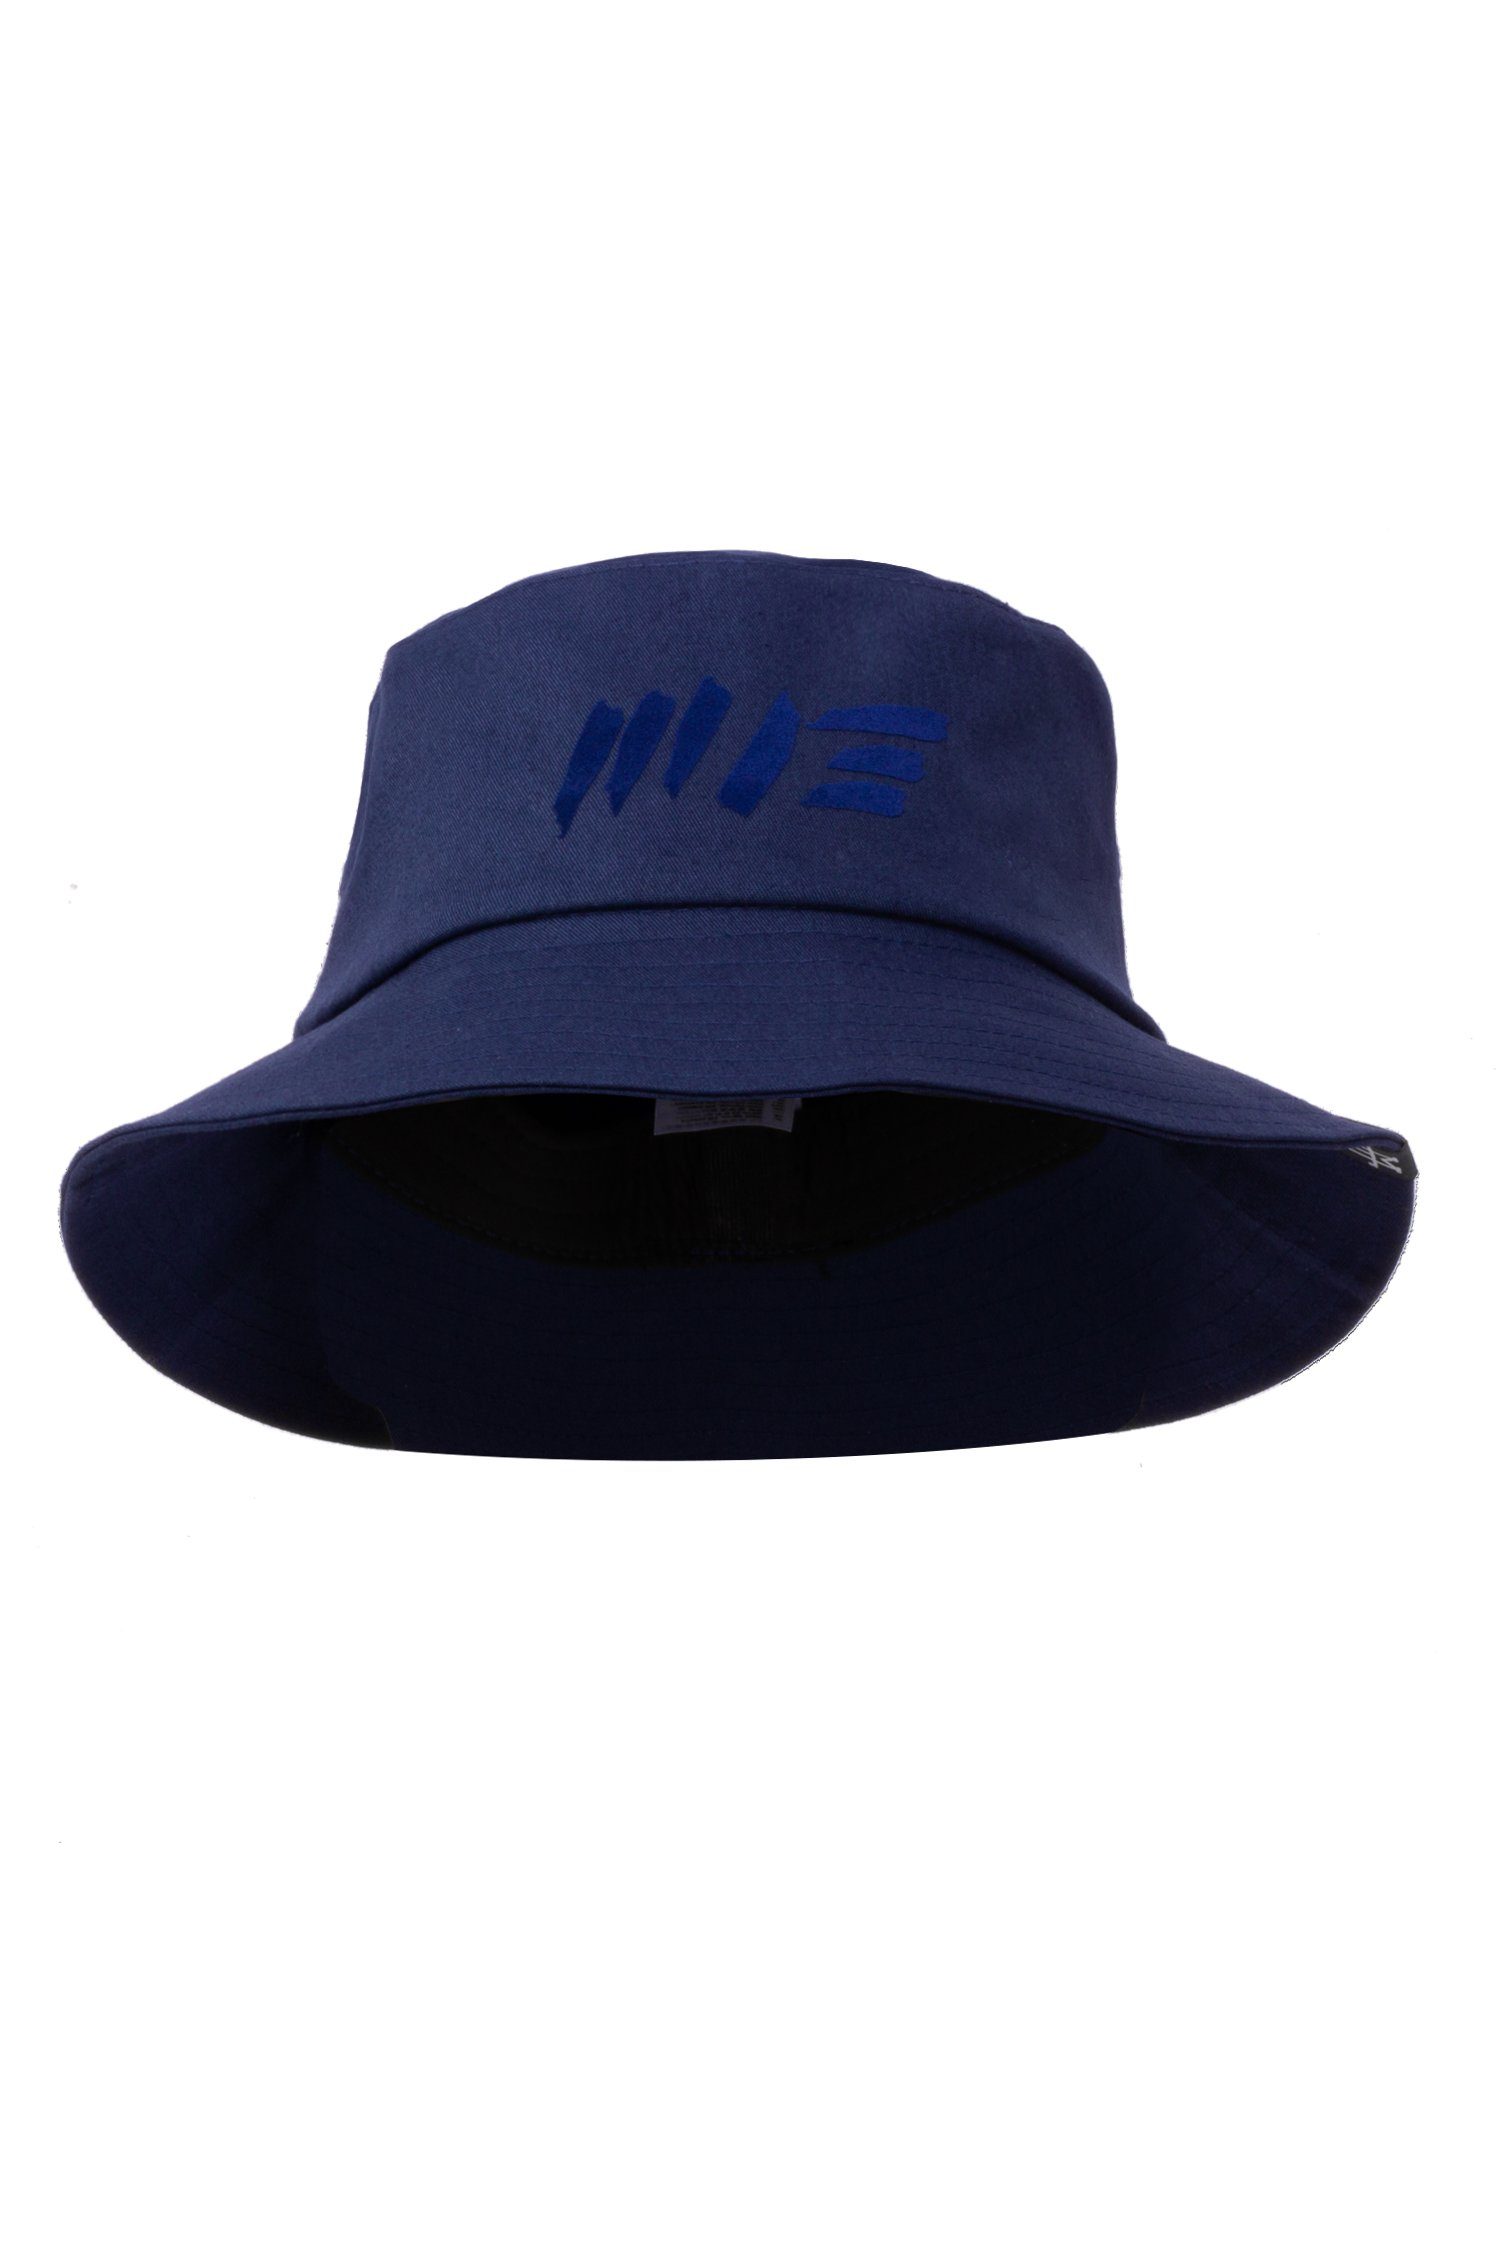 Manufaktur13 Fischerhut M13 Bucket Hat - Anglerhut, Session Hat, Fischermütze 100% Vegan Navy